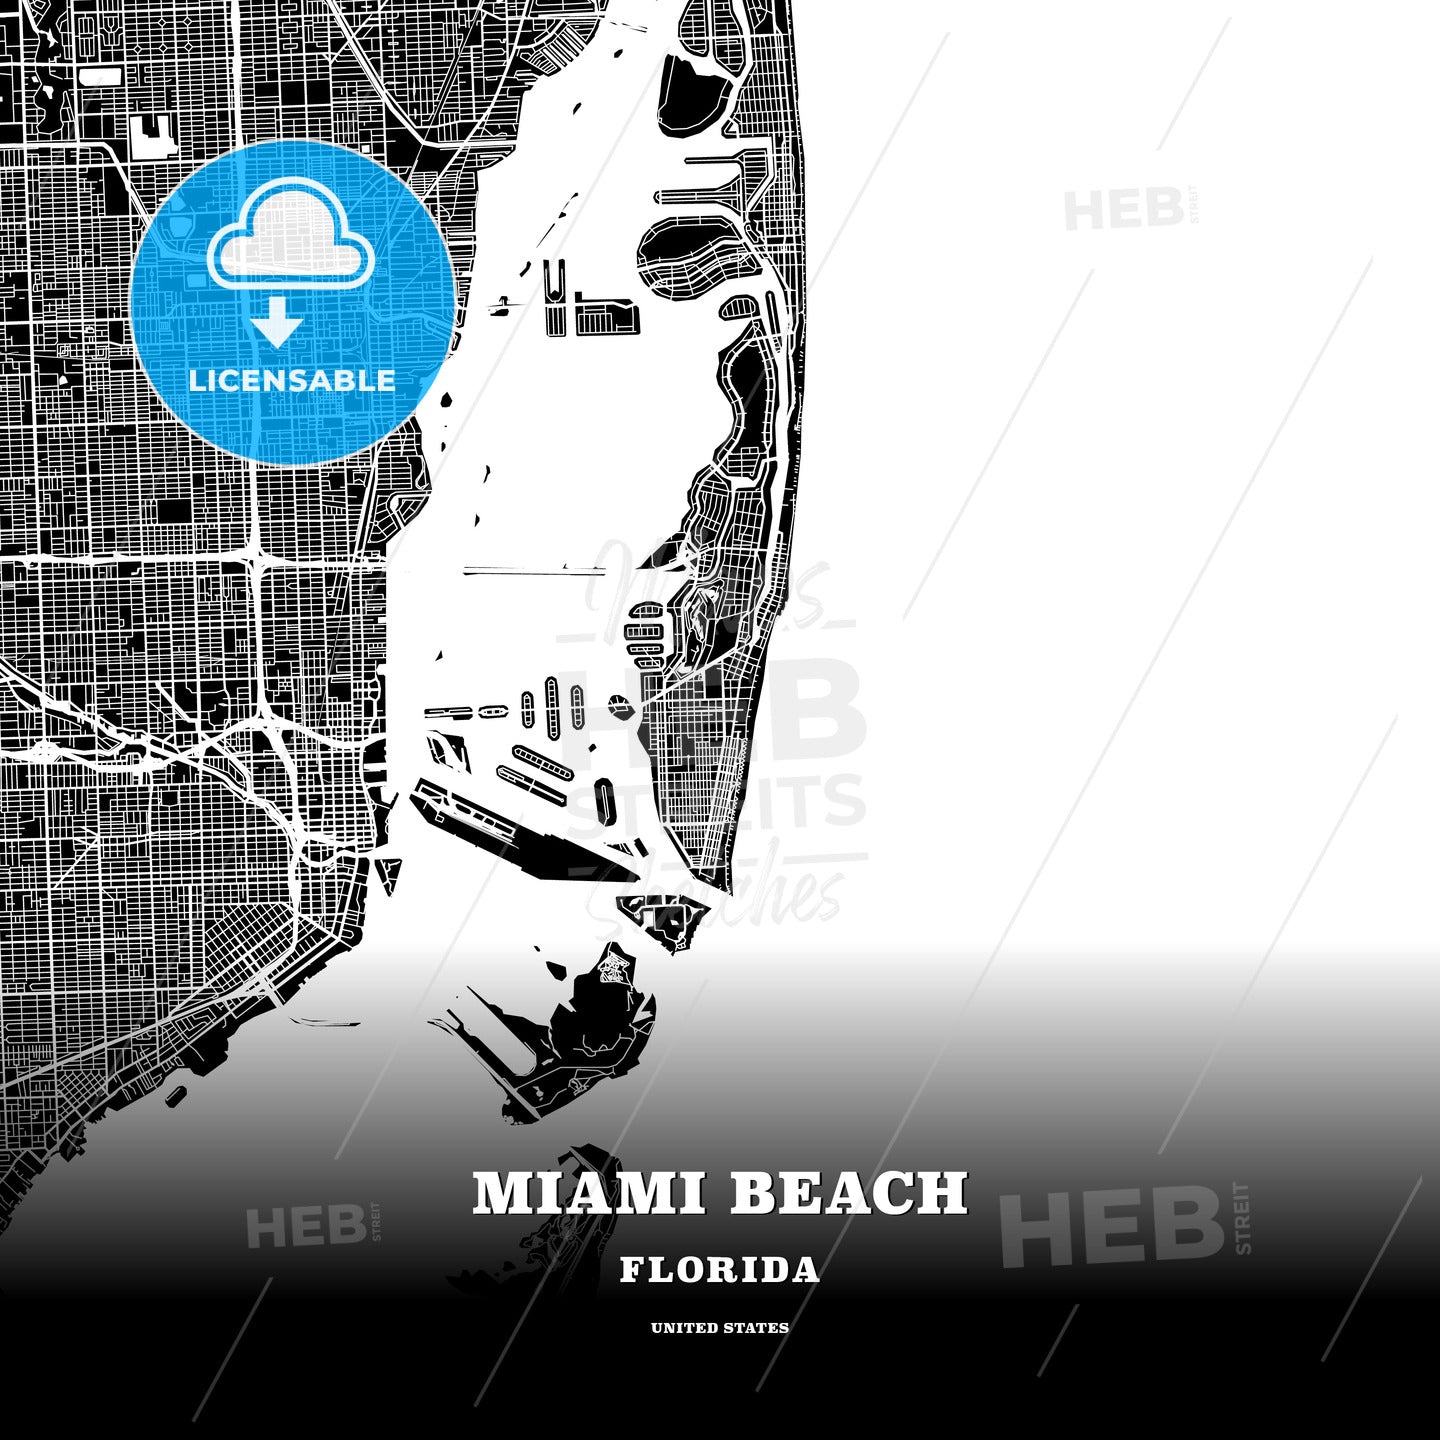 Miami Beach, Florida, USA map